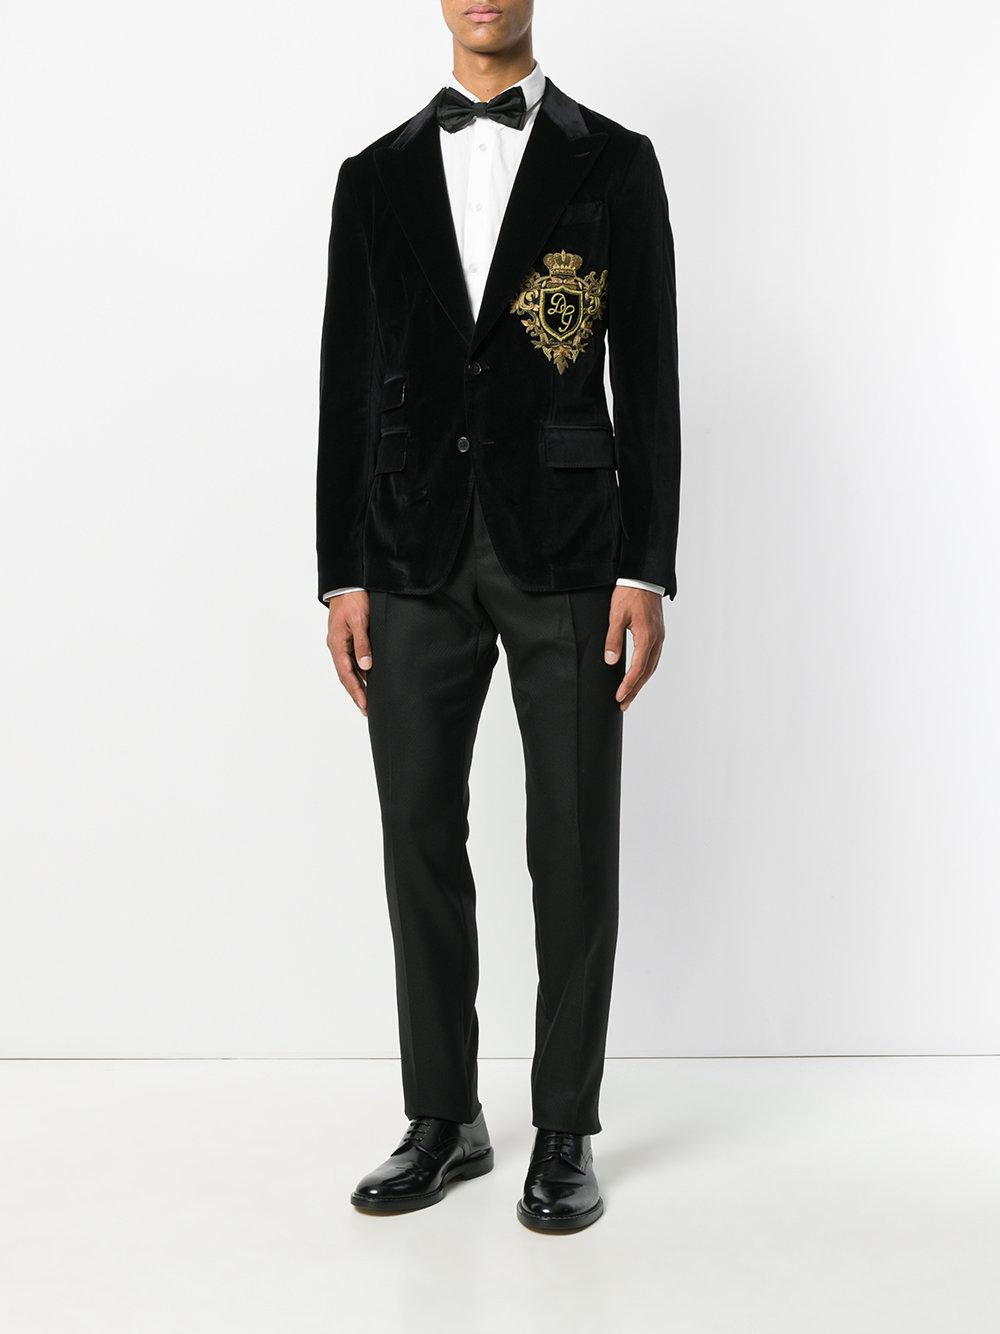 Dolce & Gabbana Logo Crest Velvet Blazer in Black for Men - Lyst